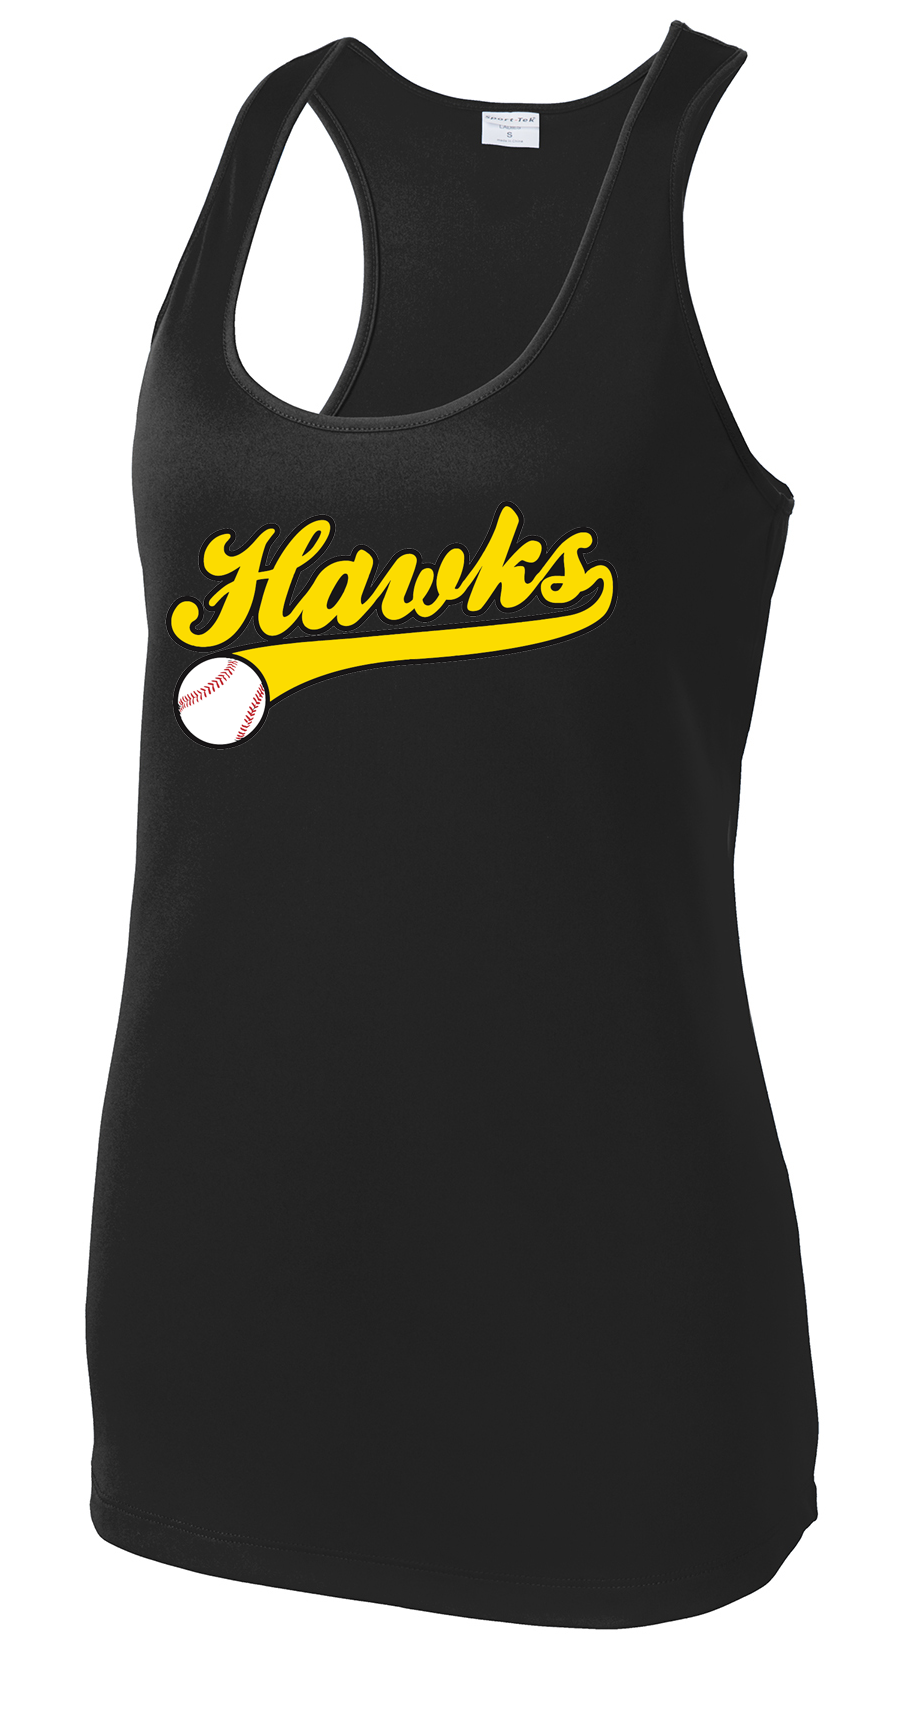 Hawks Baseball Women's Racerback Tank